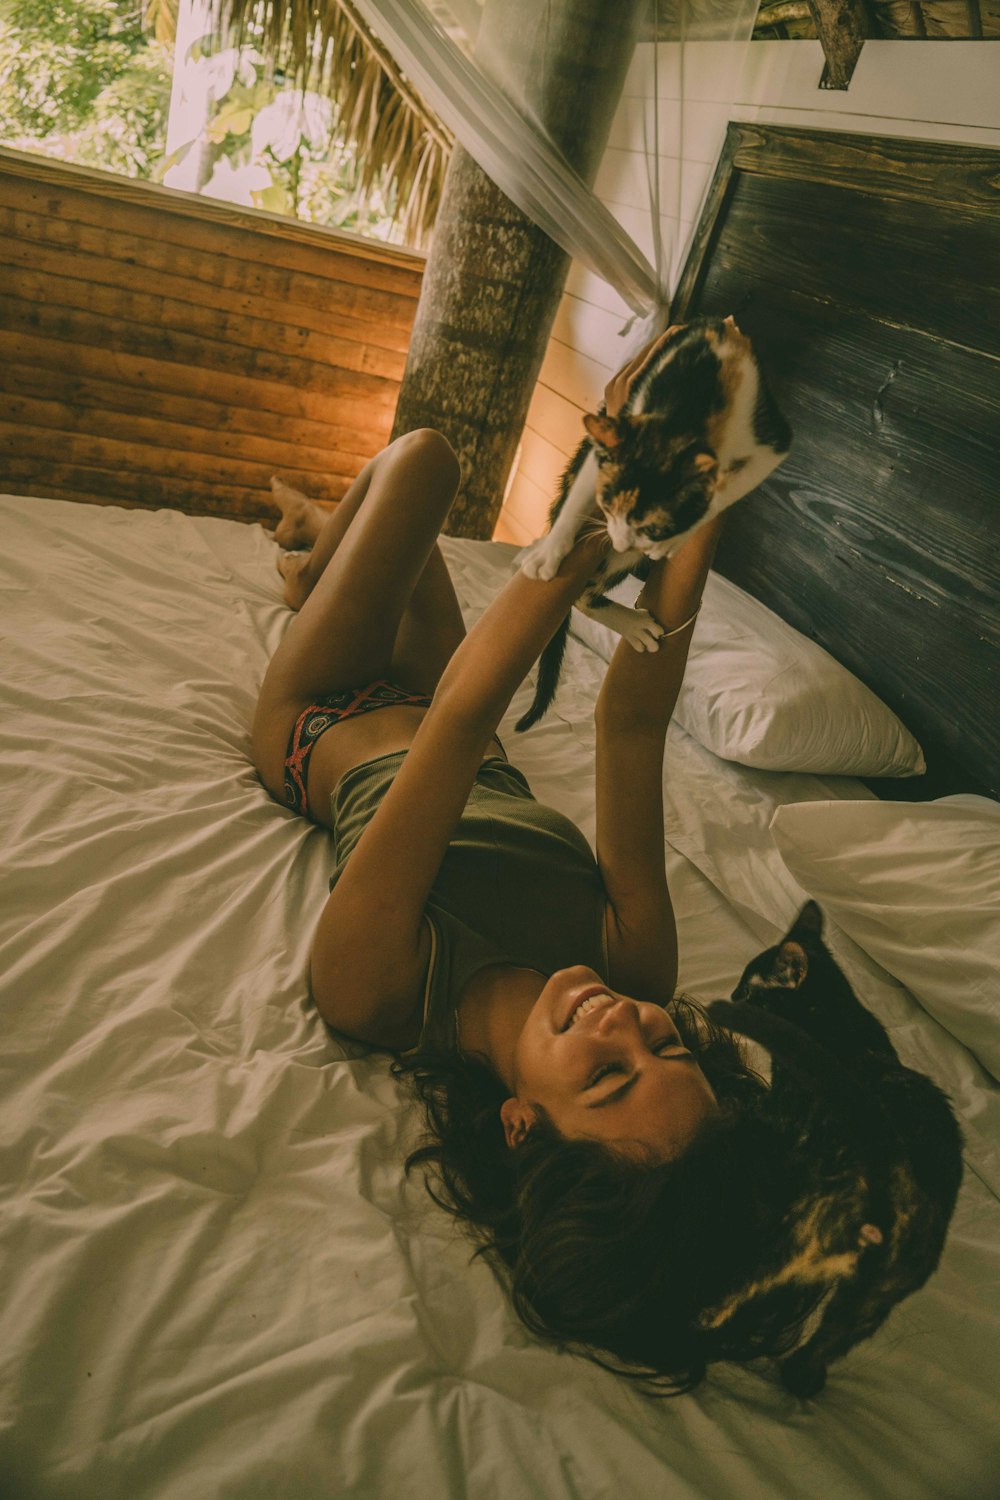 Frau liegt auf dem Bett, während sie eine Katze hält